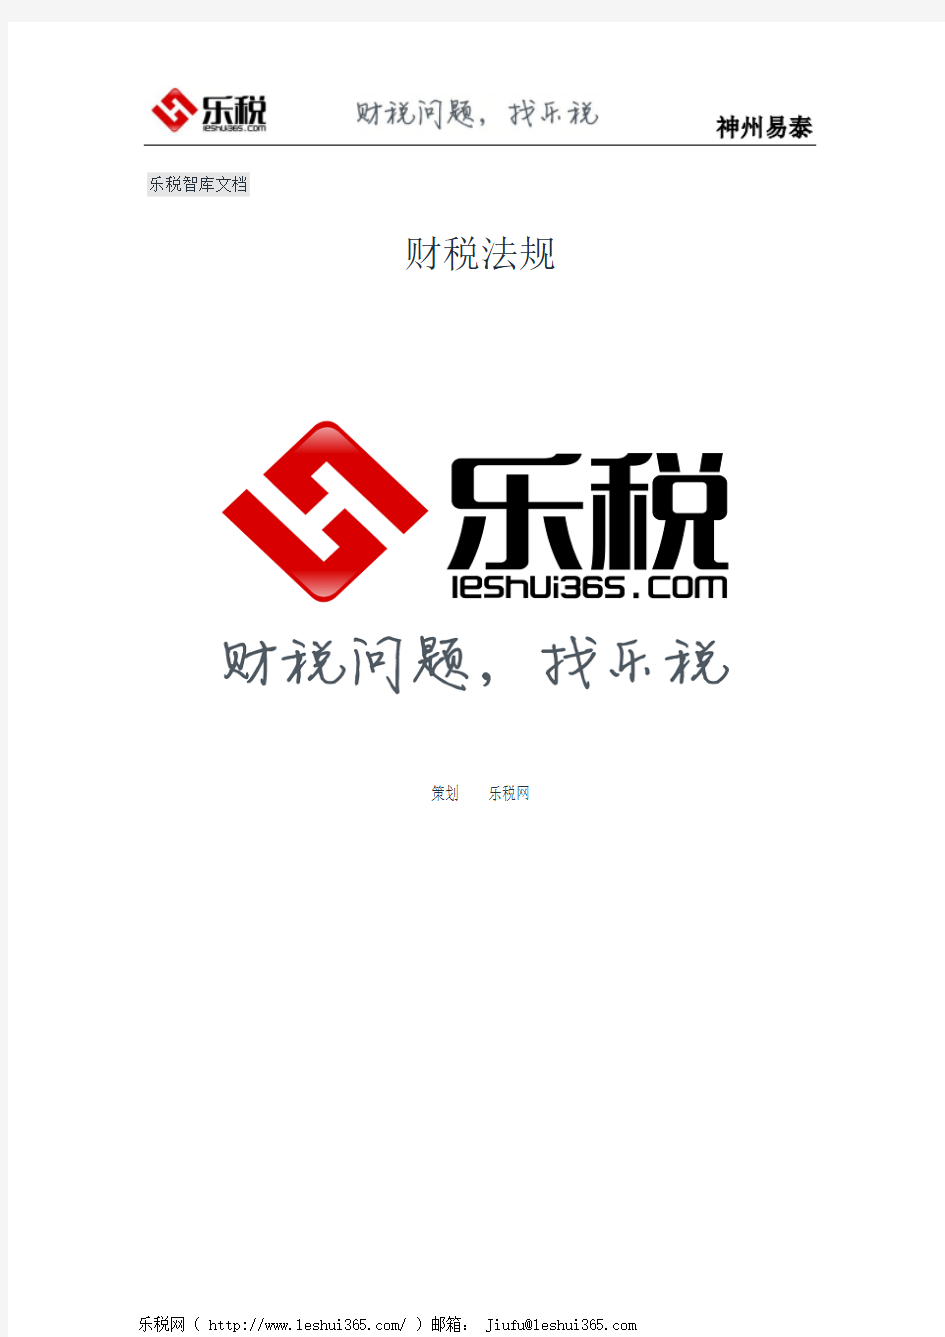 上海市国家税务局上海市地方税务局关于交通银行股份有限公司等三